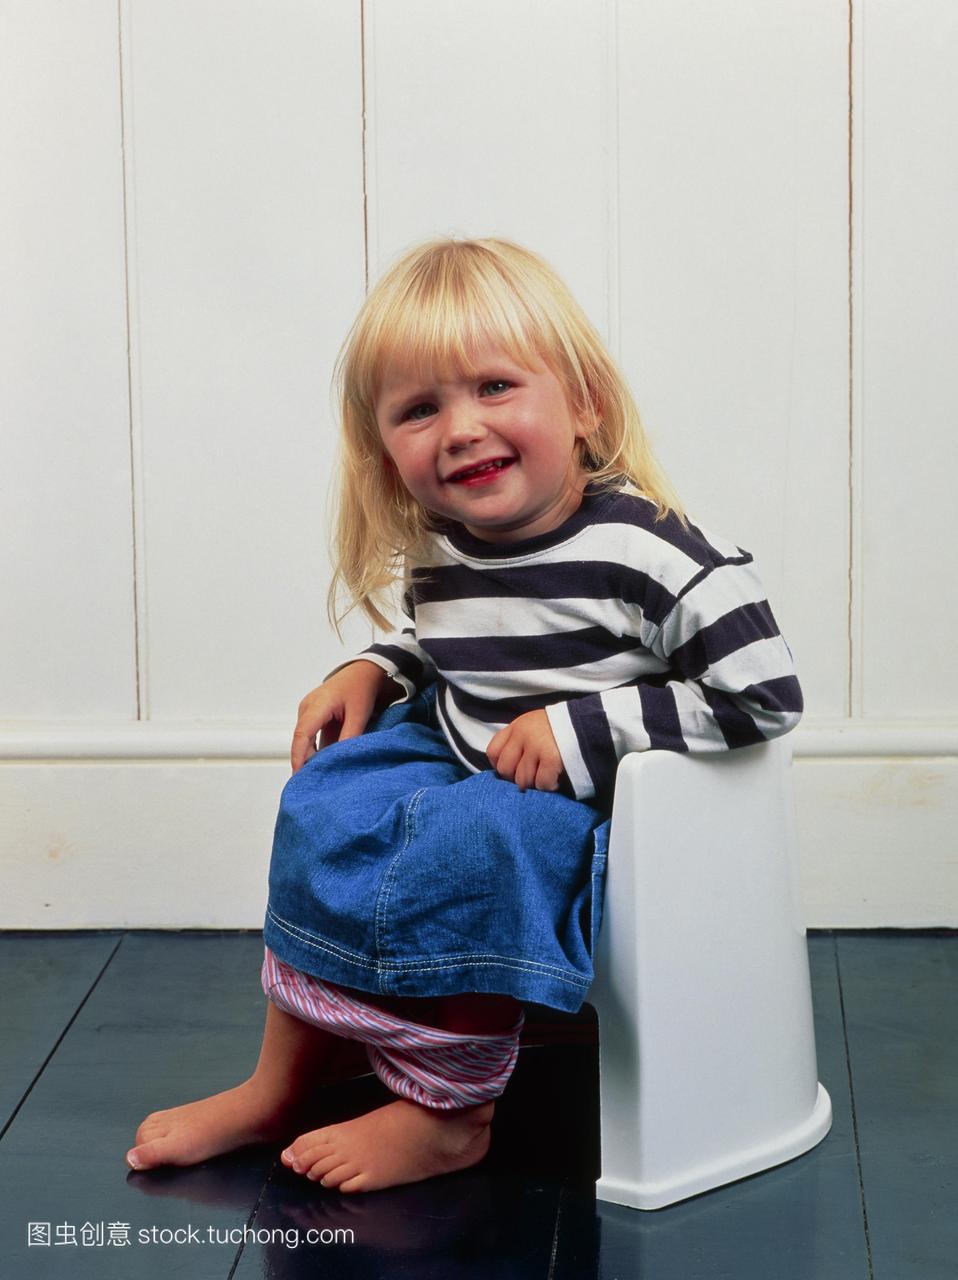 模型发布。如厕训练。一个两岁半女孩使用便盆